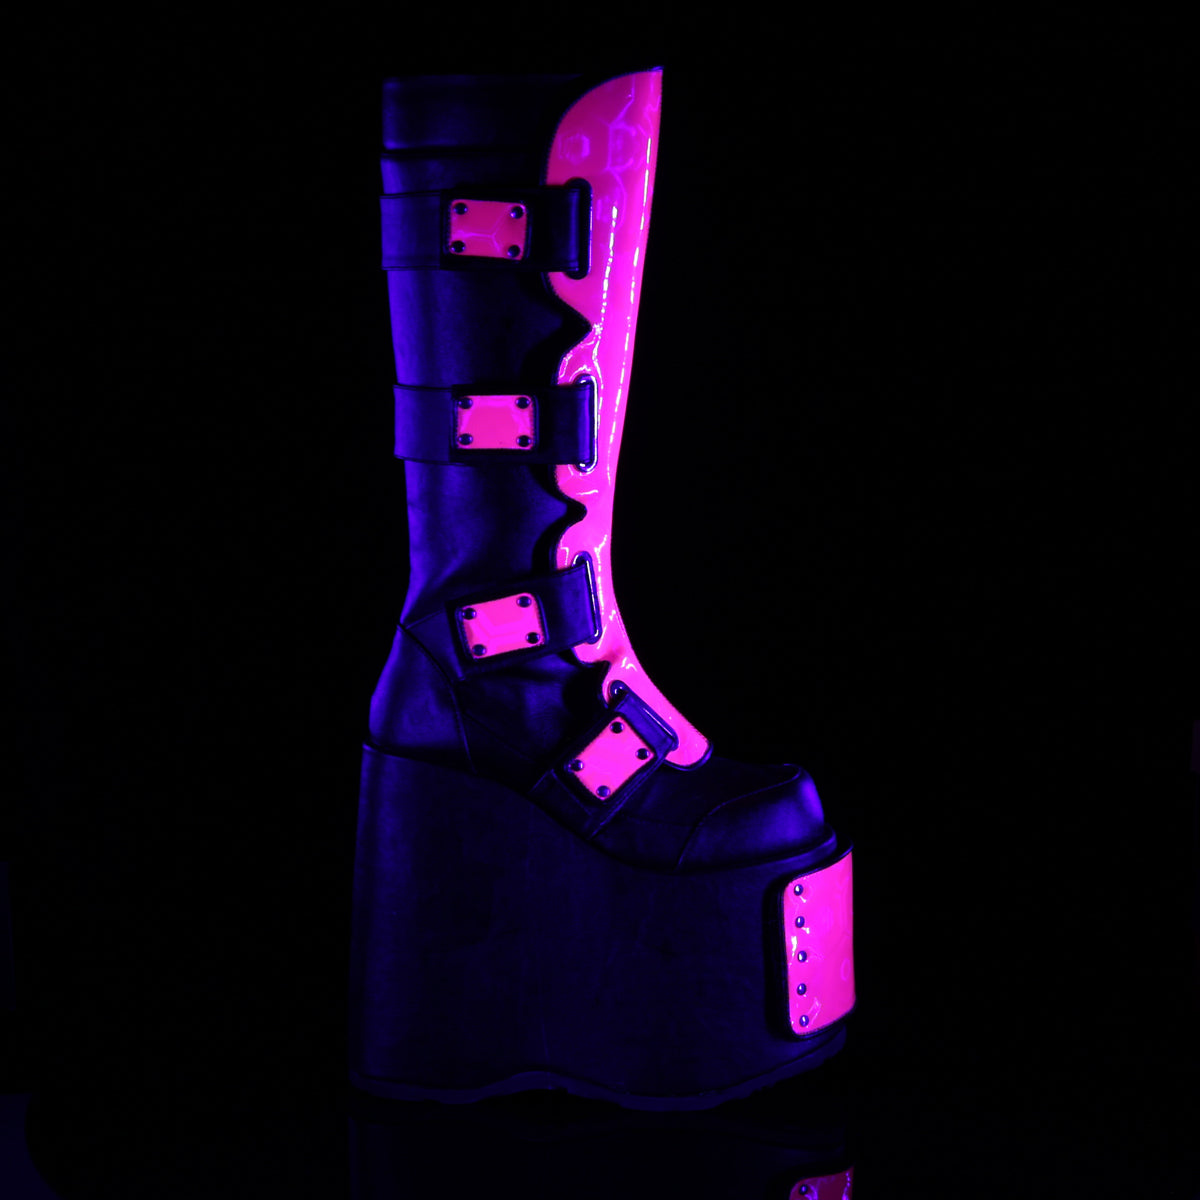 UV Reactive Slay Boots